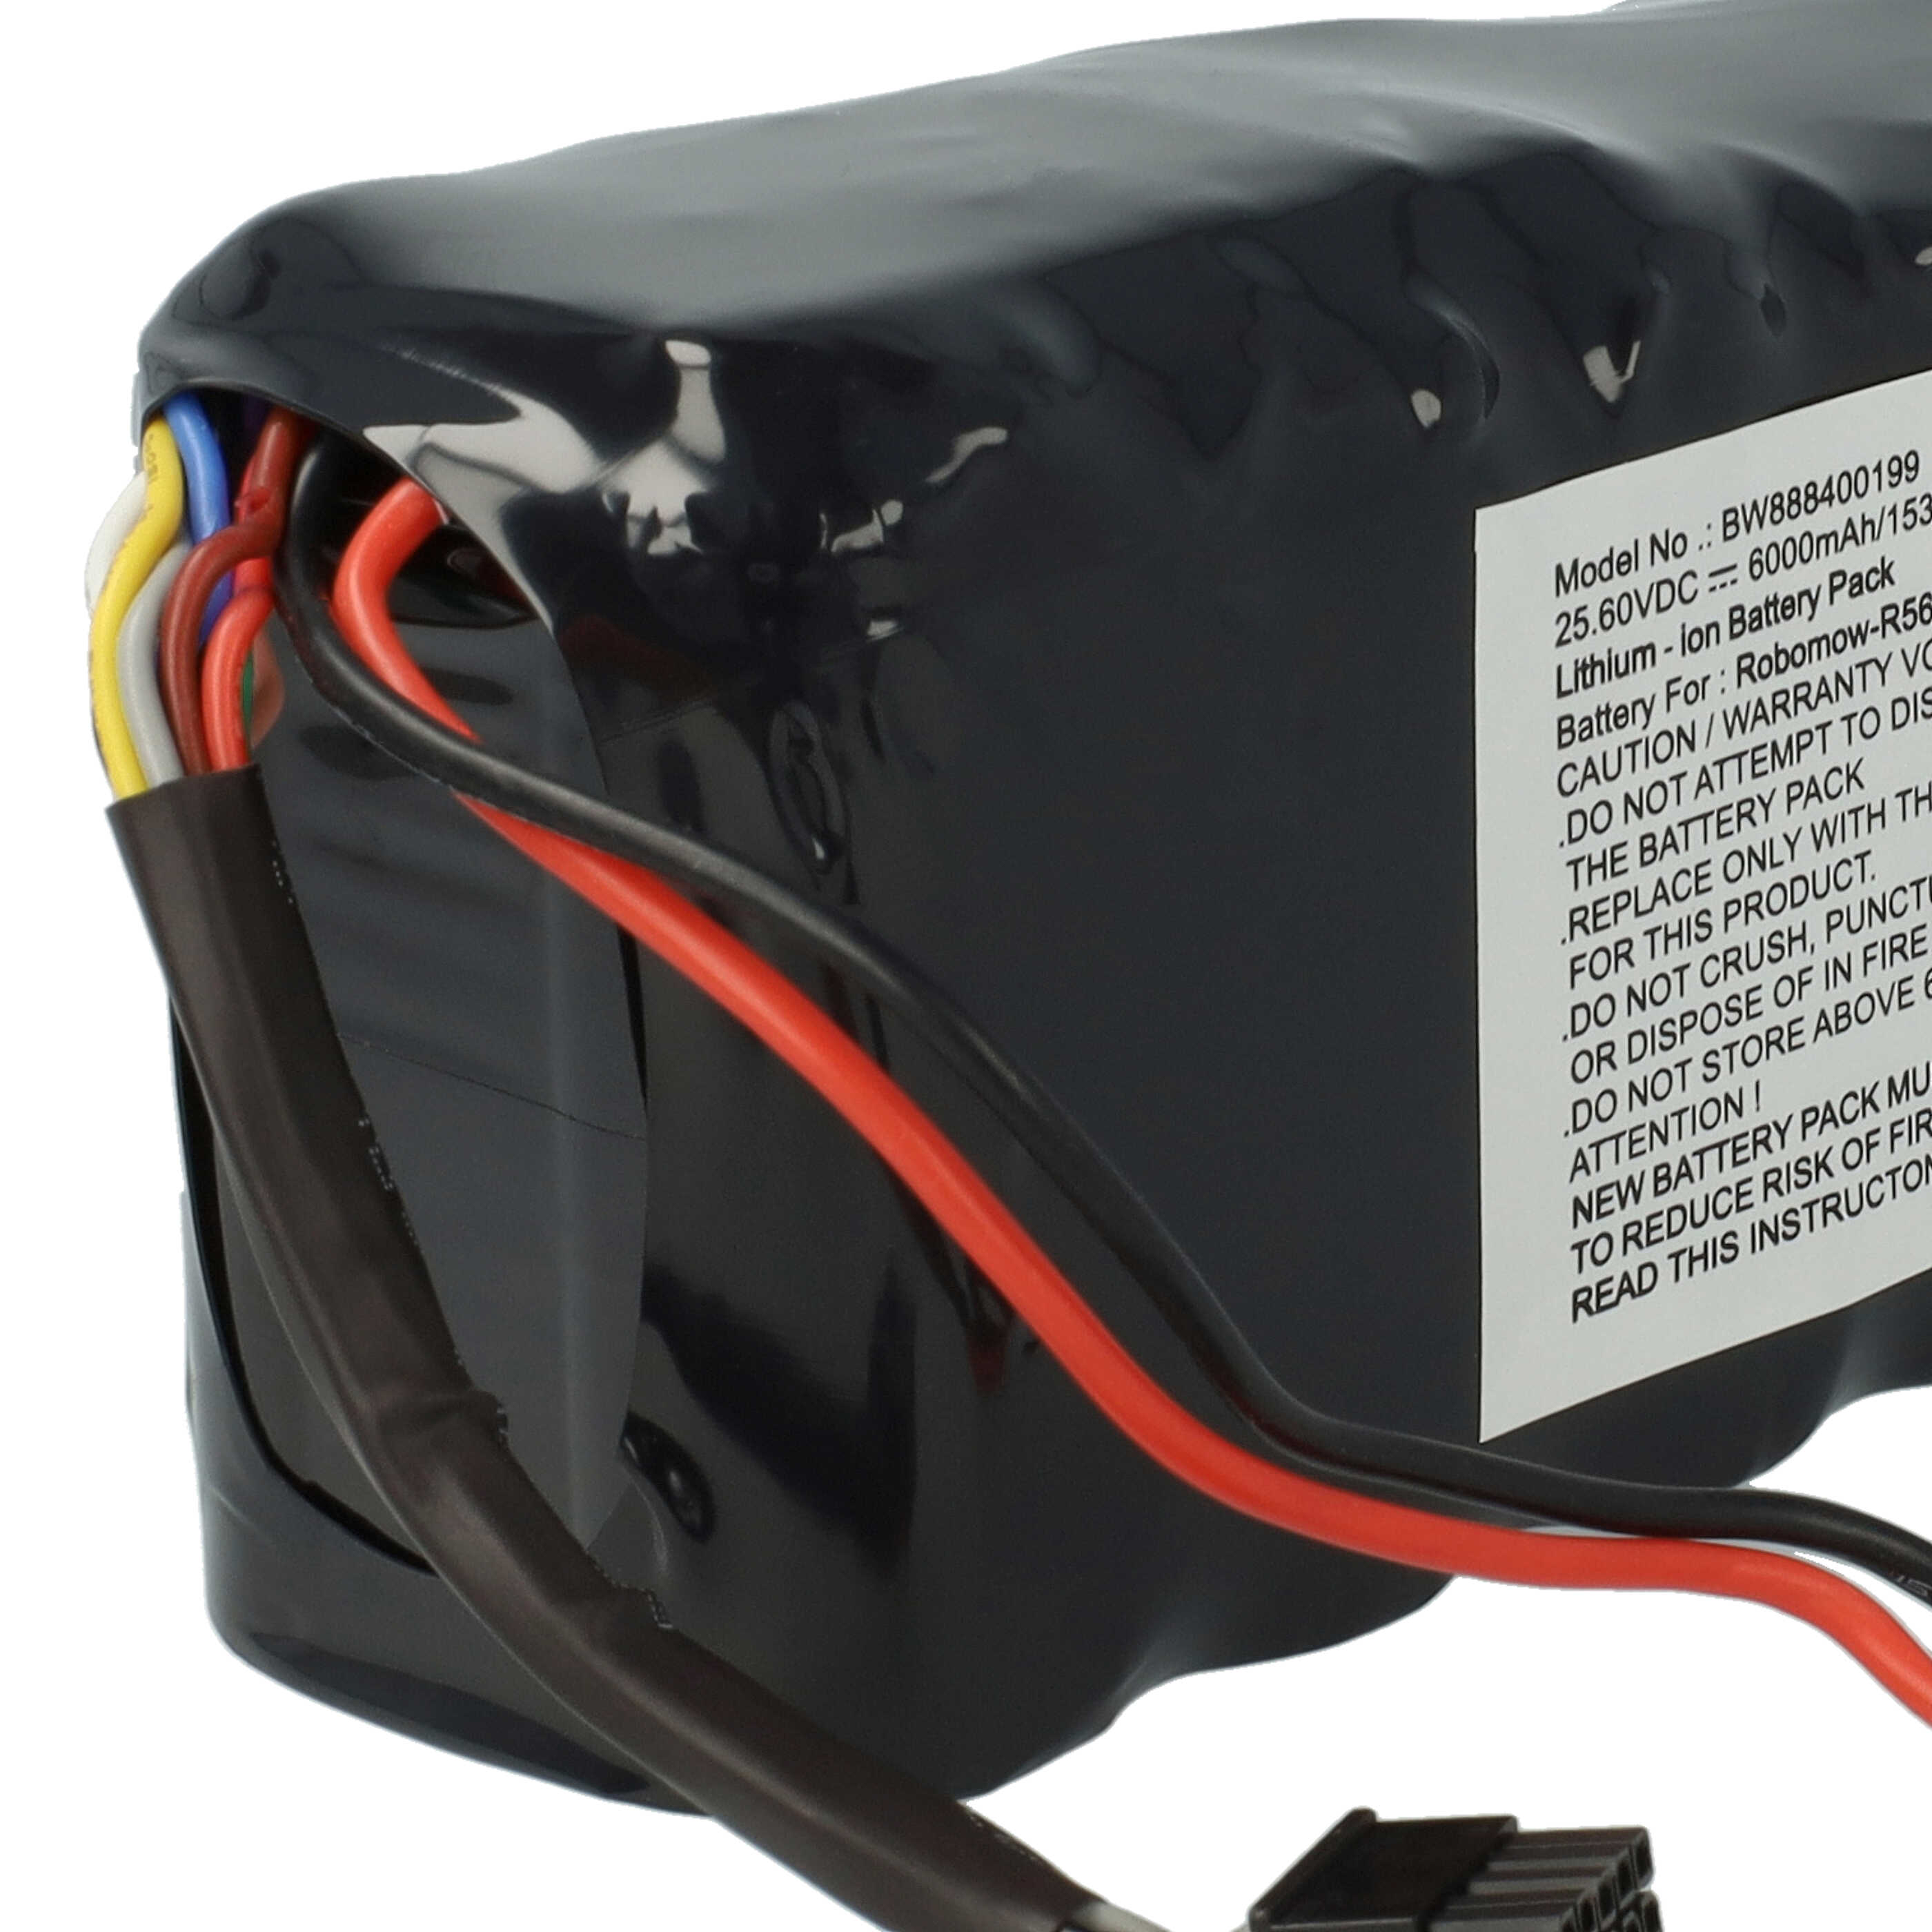 Batterie remplace Robomow MRK6105A pour outil de jardinage - 6000mAh 25,6V Li-ion